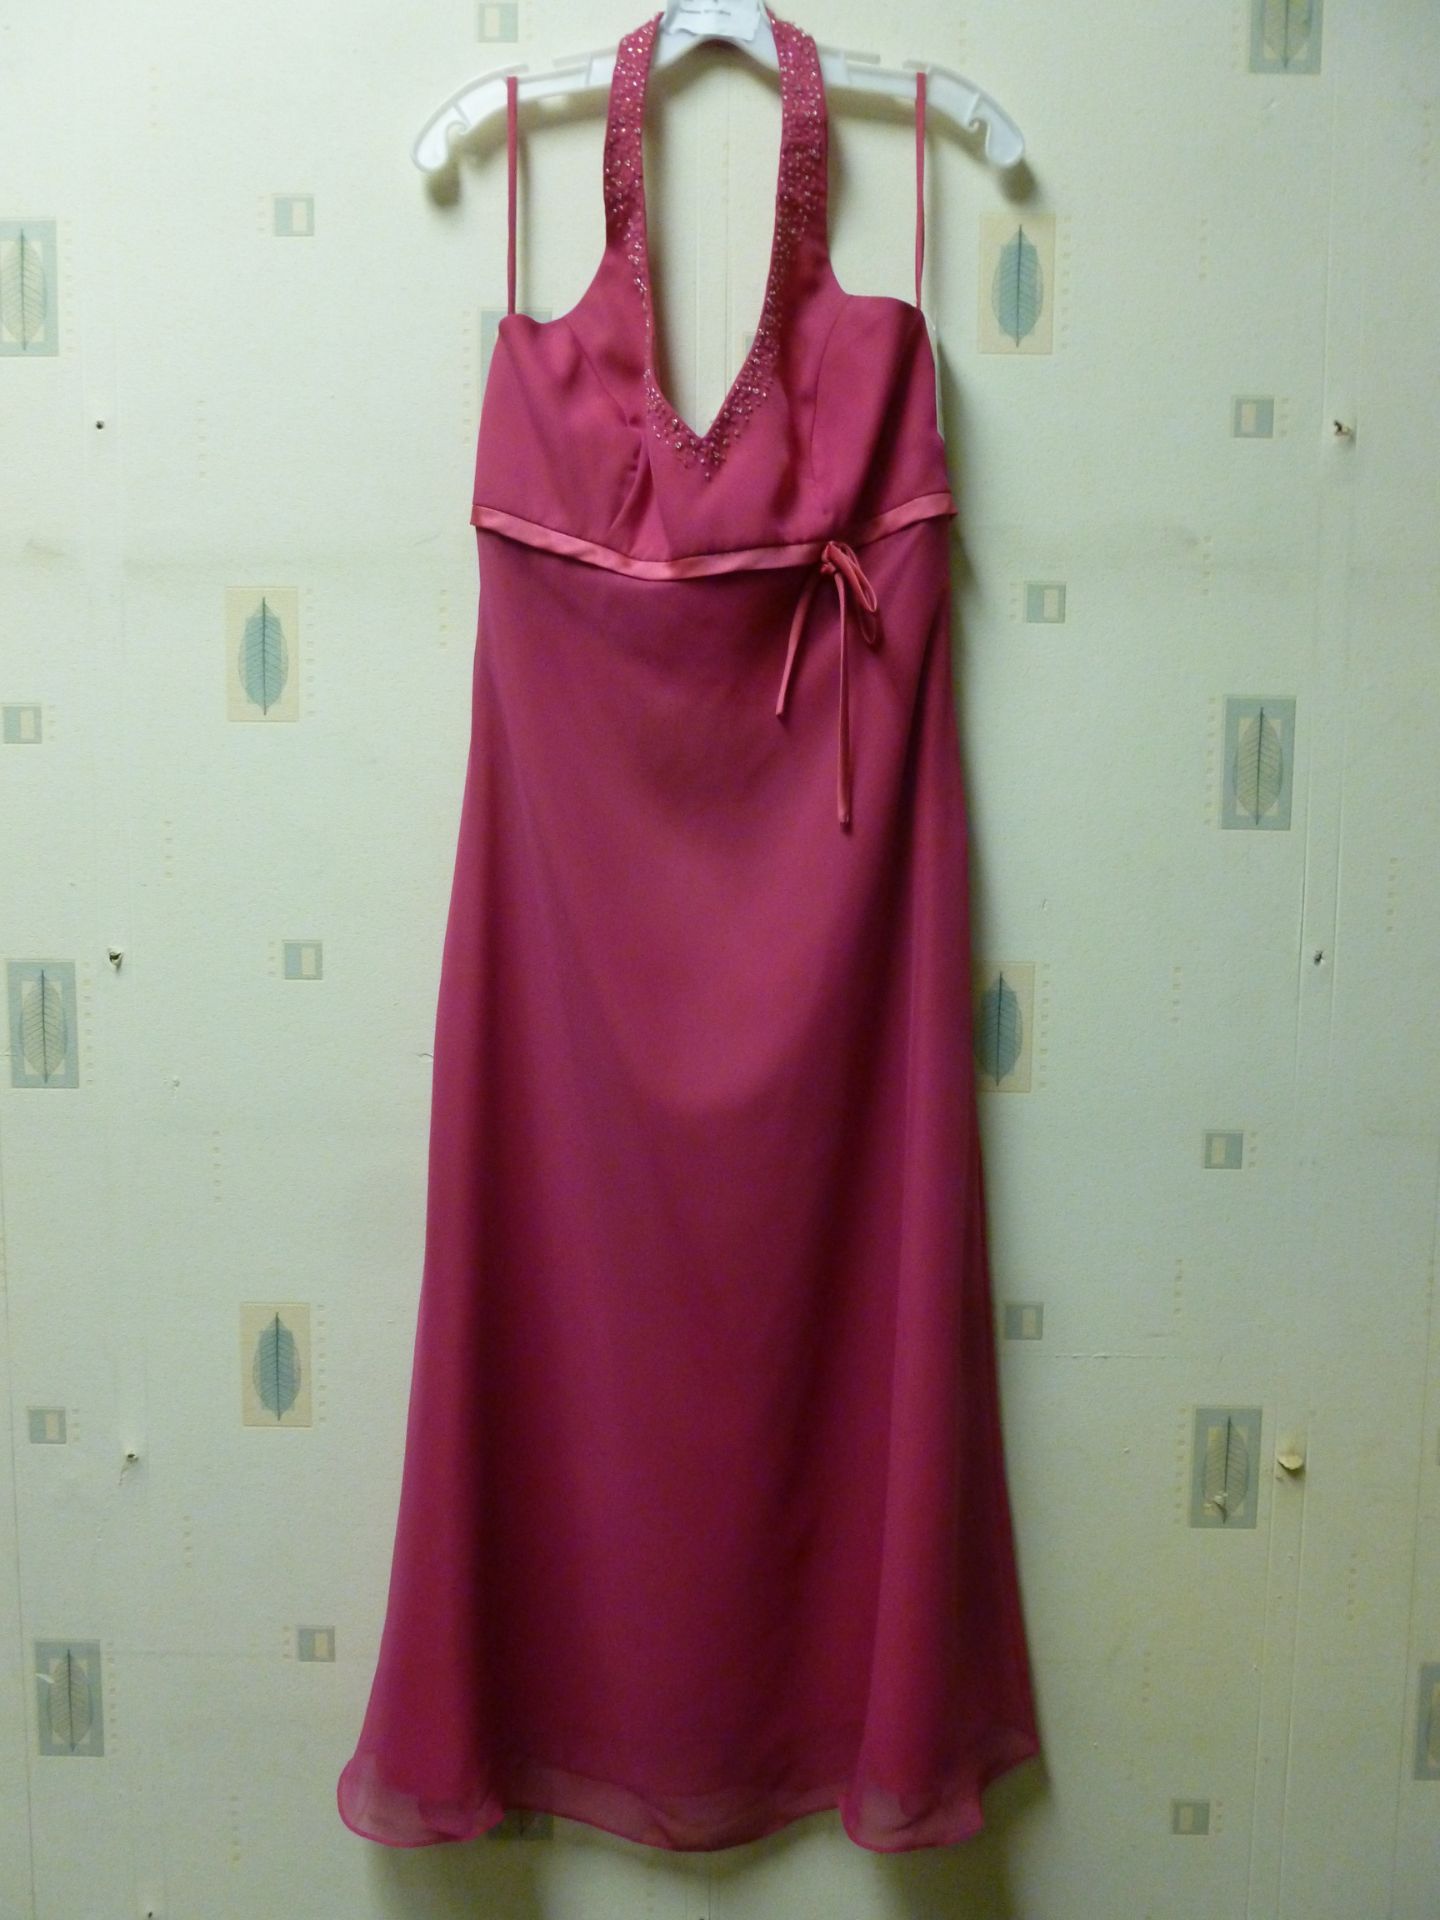 Avalon Bridal Fushia Dress RRP £175 Size 10